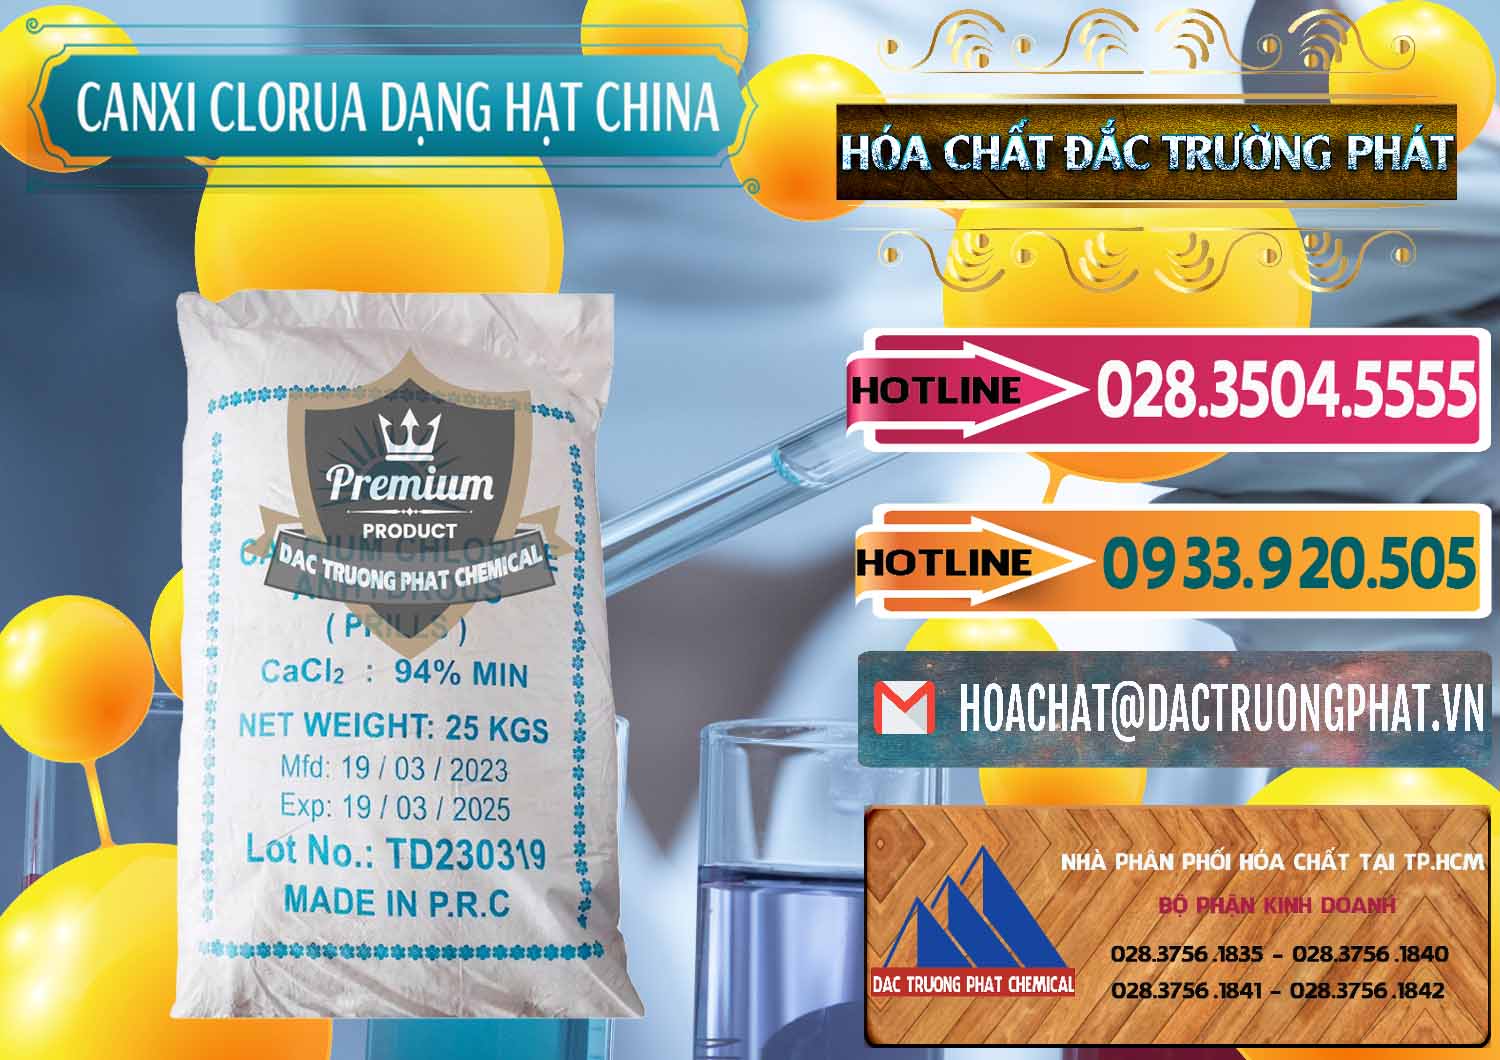 Cty chuyên nhập khẩu và bán CaCl2 – Canxi Clorua 94% Dạng Hạt Trung Quốc China - 0373 - Công ty chuyên kinh doanh & phân phối hóa chất tại TP.HCM - dactruongphat.vn